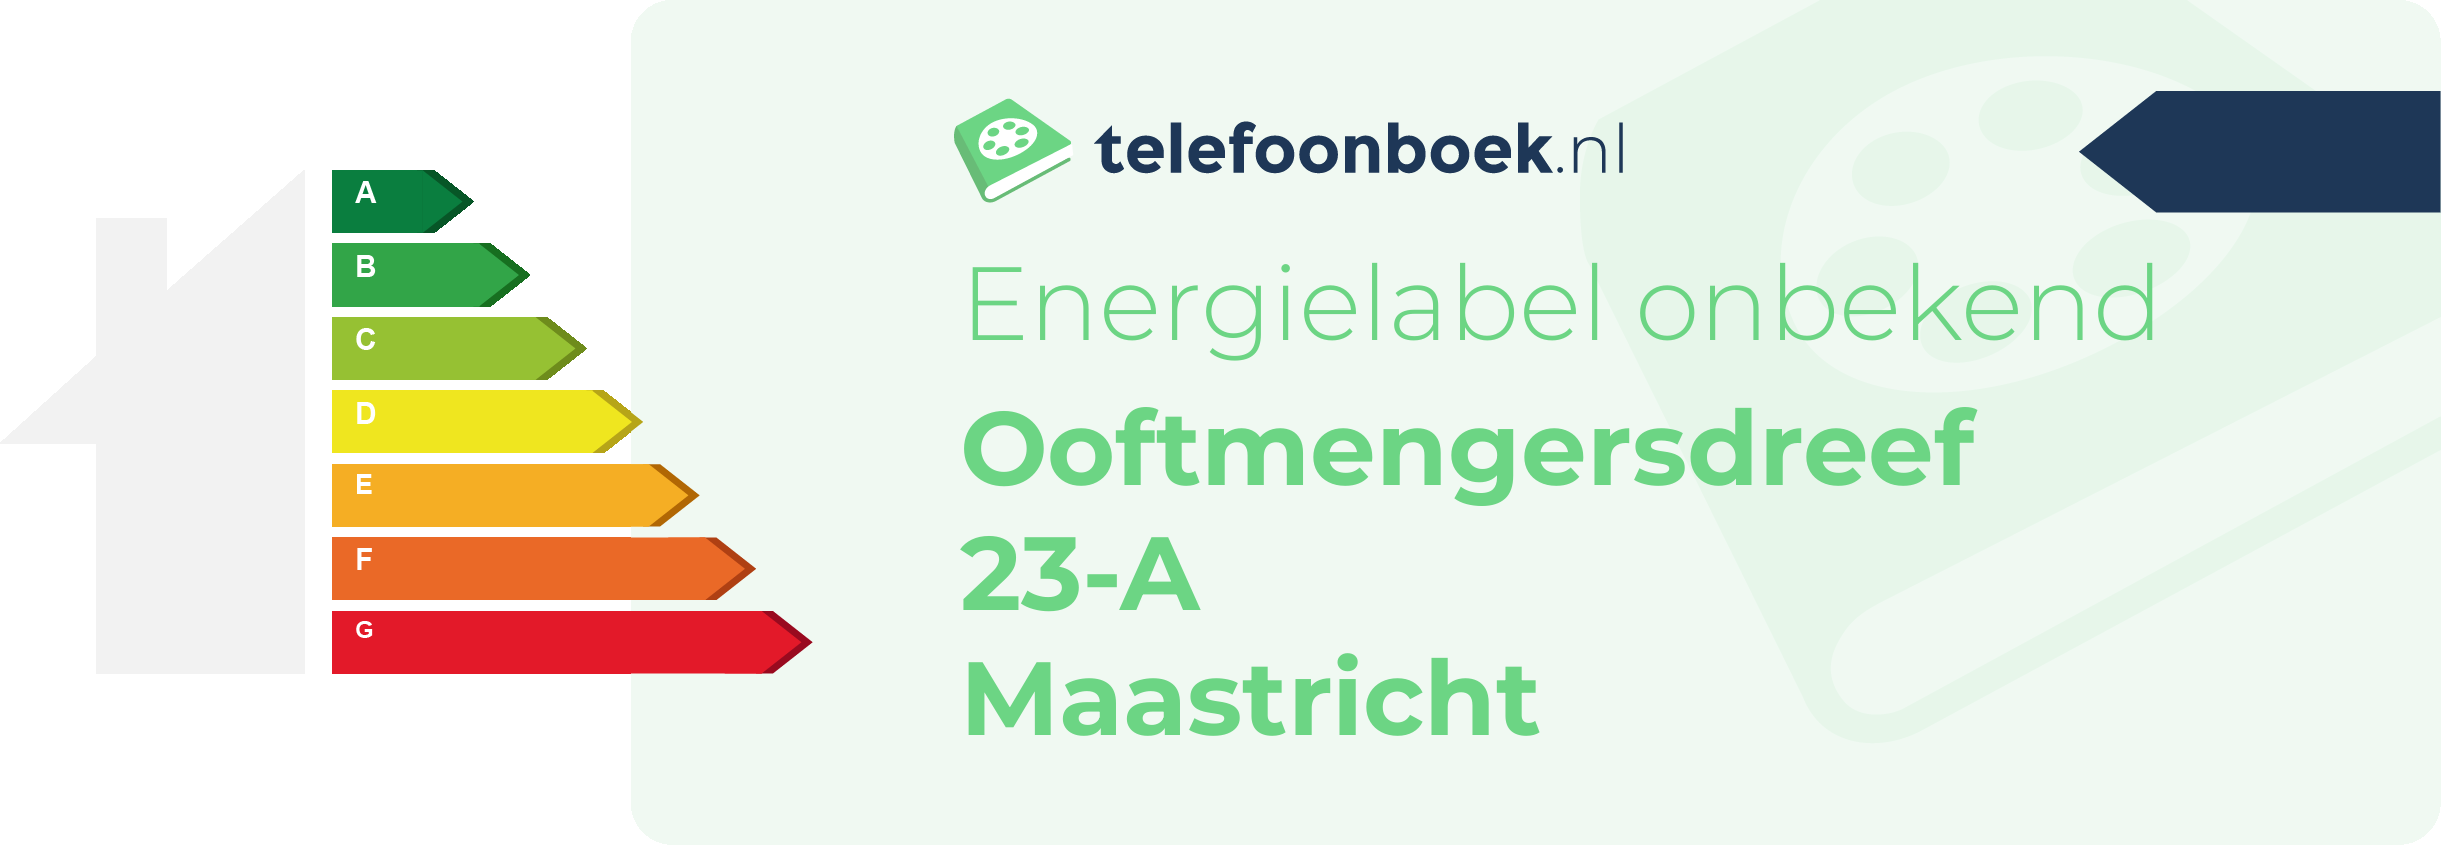 Energielabel Ooftmengersdreef 23-A Maastricht